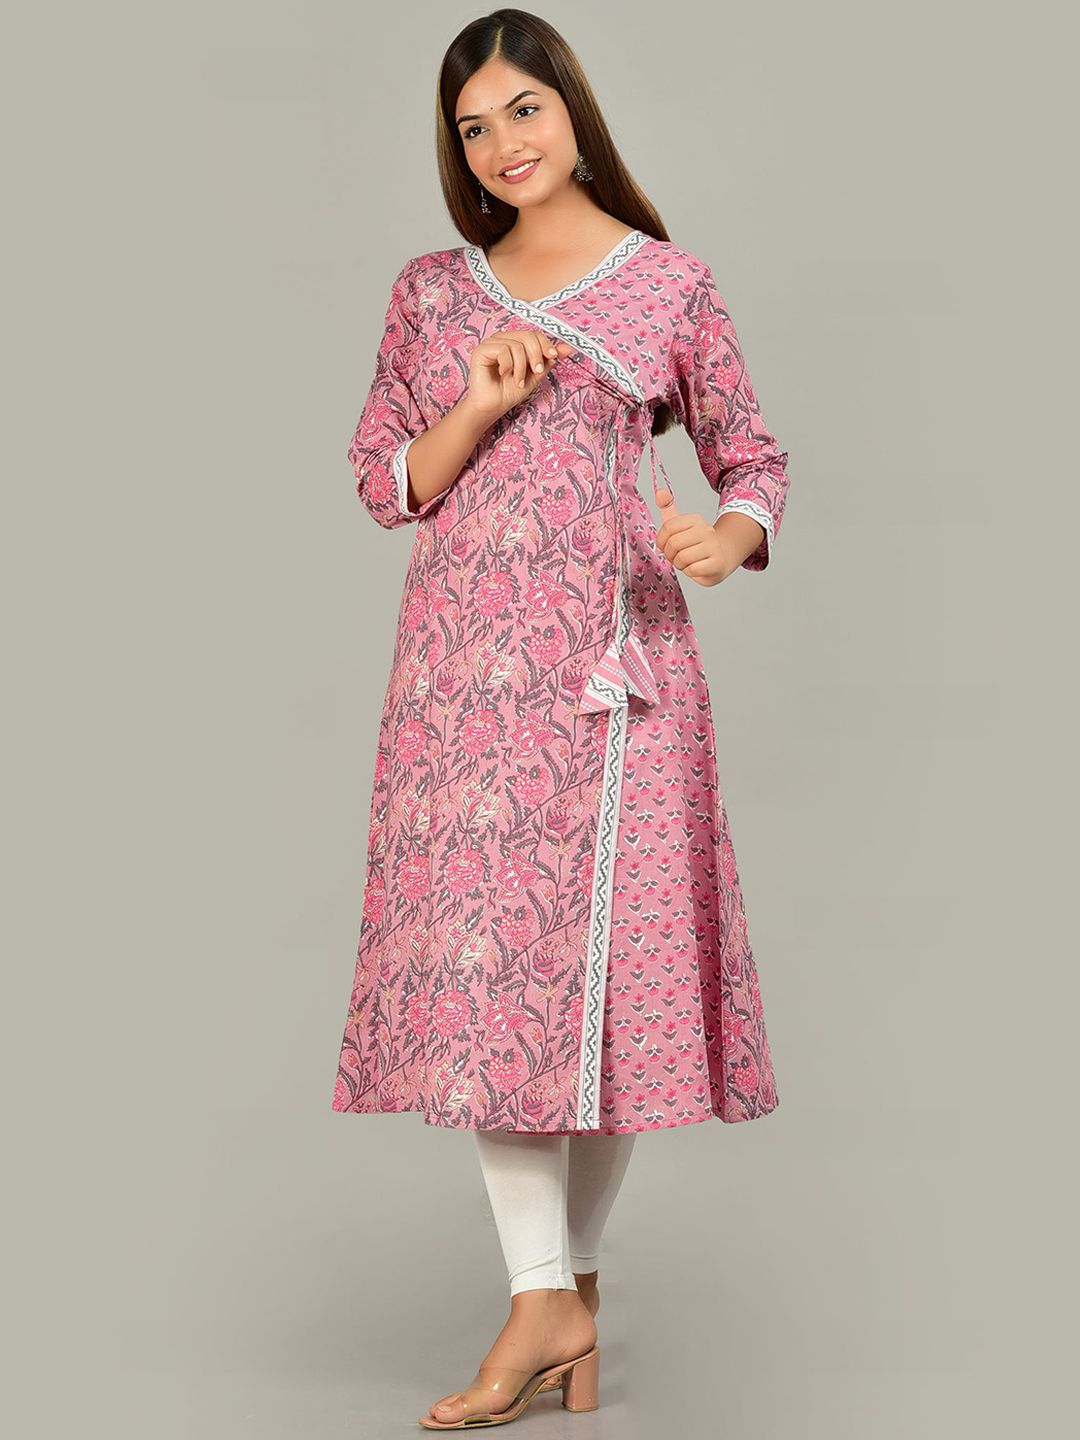 KALINI Women Pink Ethnic Motifs Printed Cotton Kurta Price in India